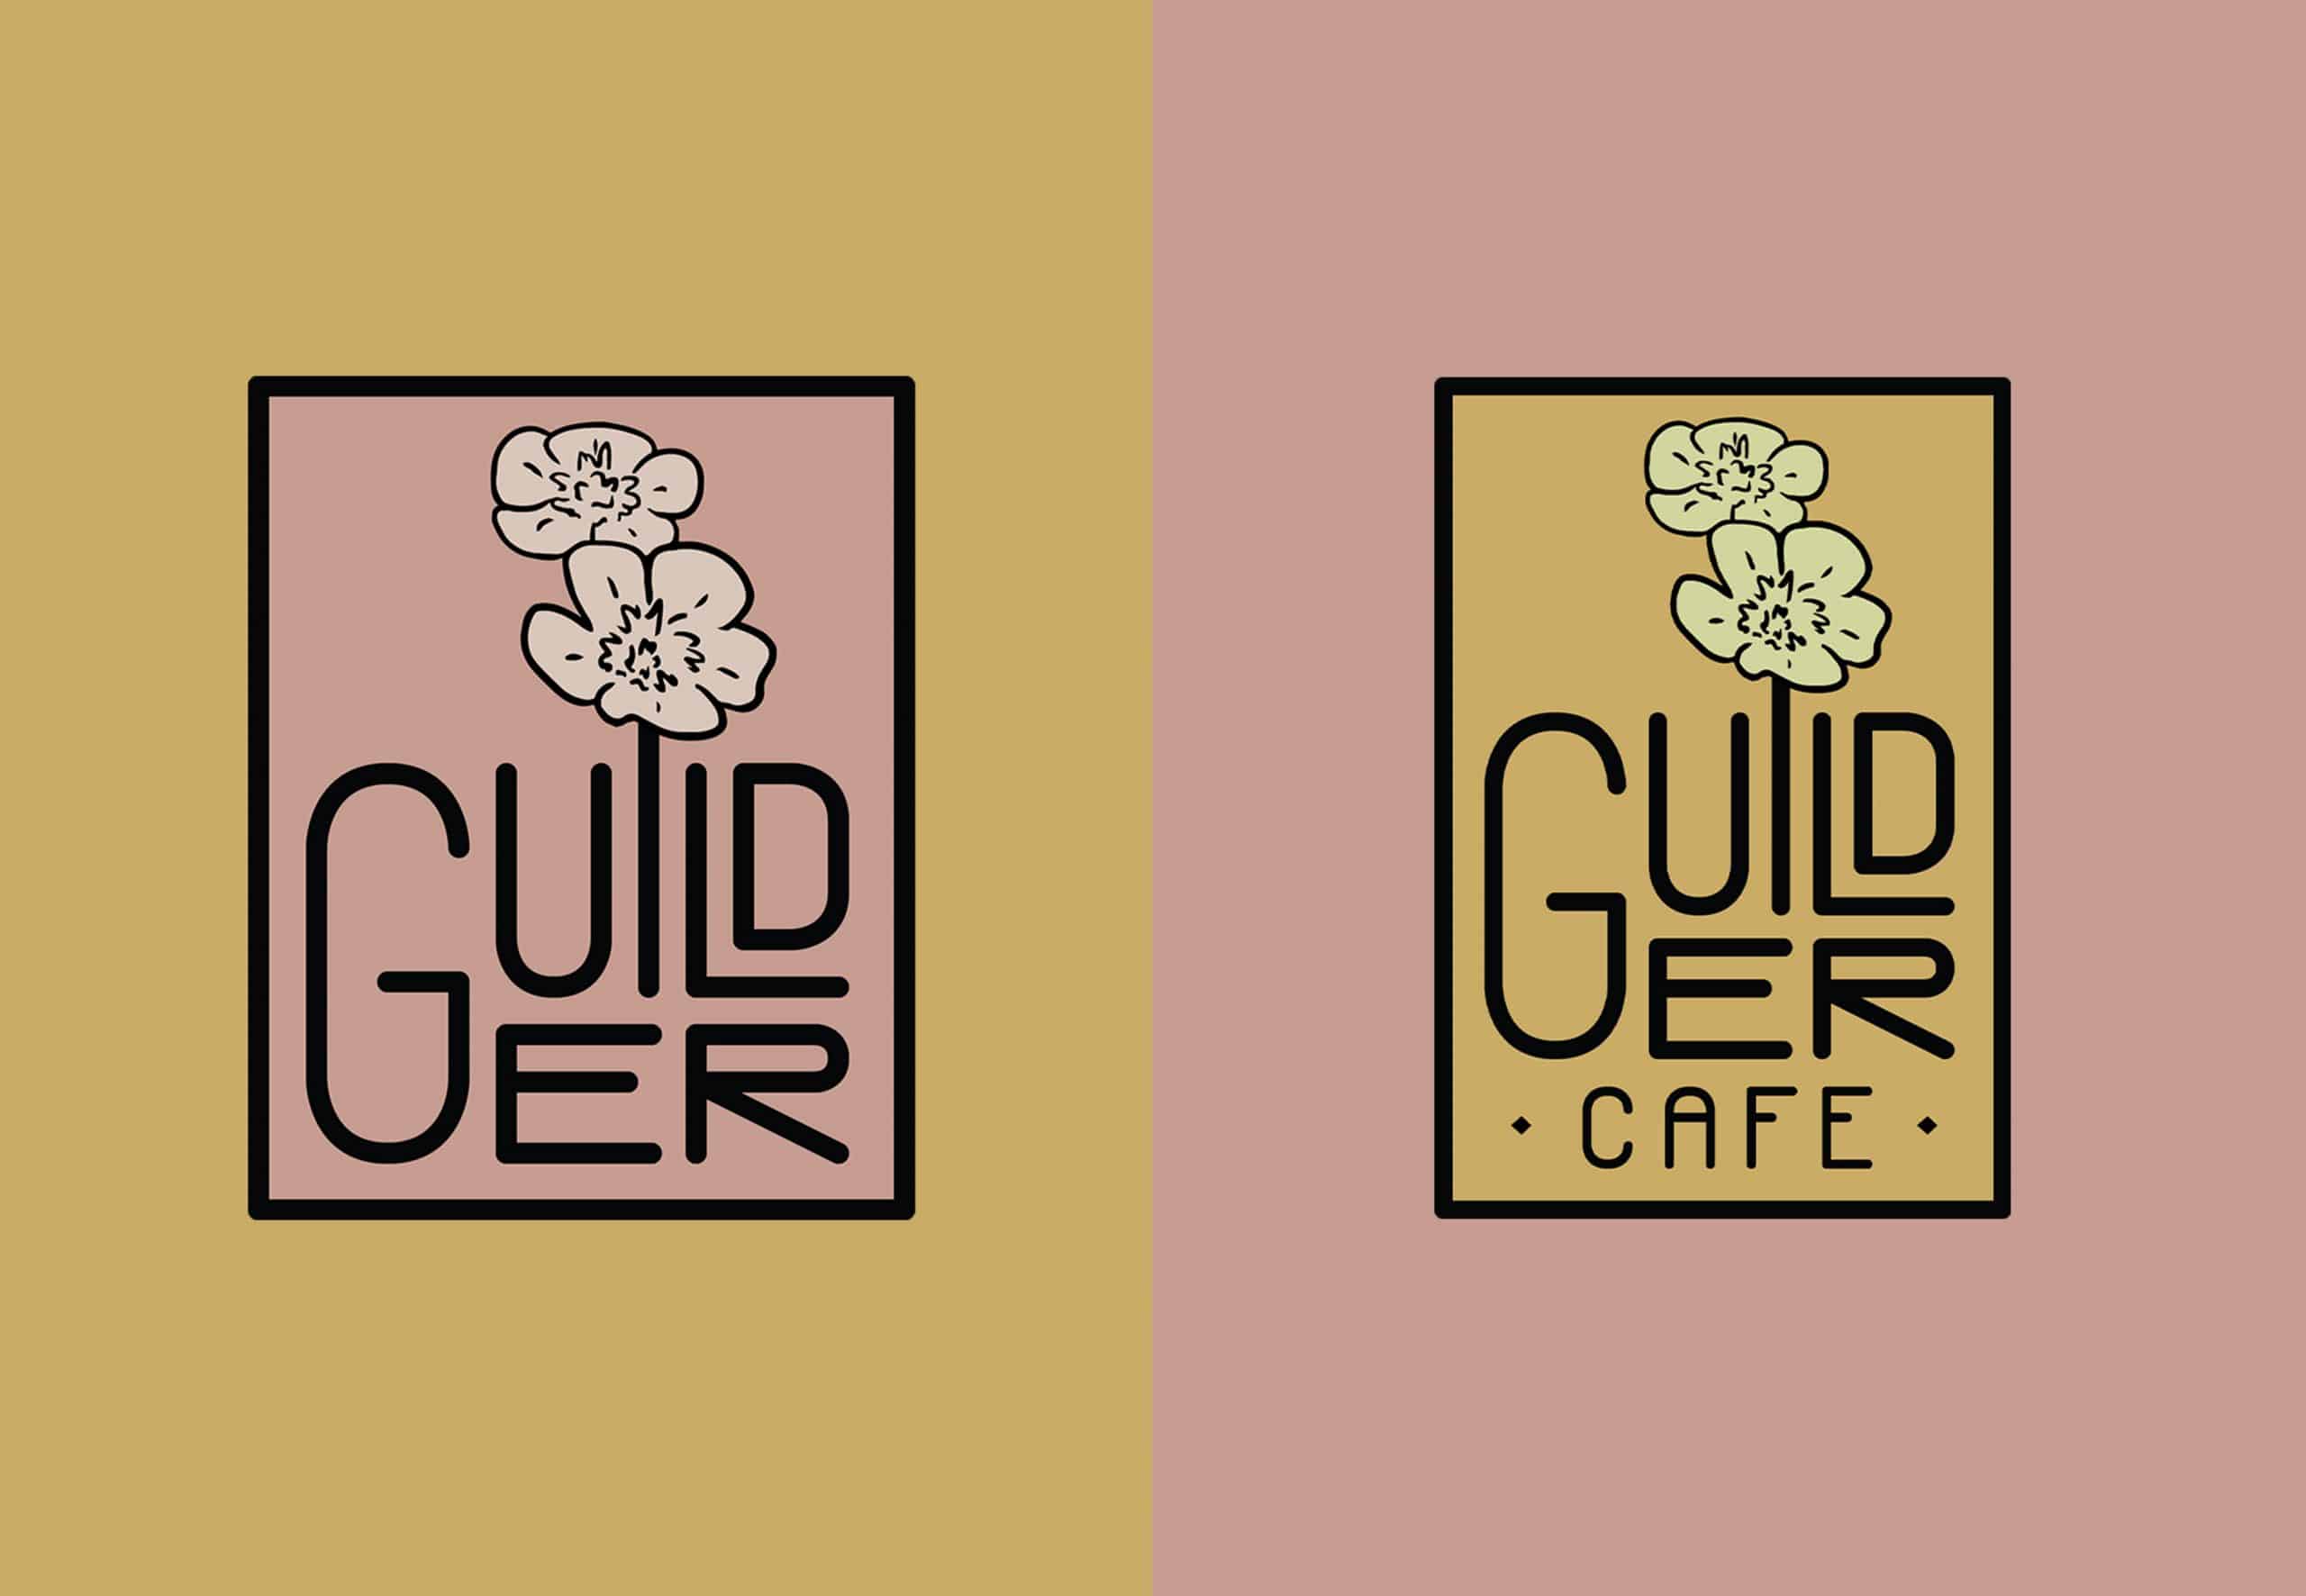 Two guilder logos